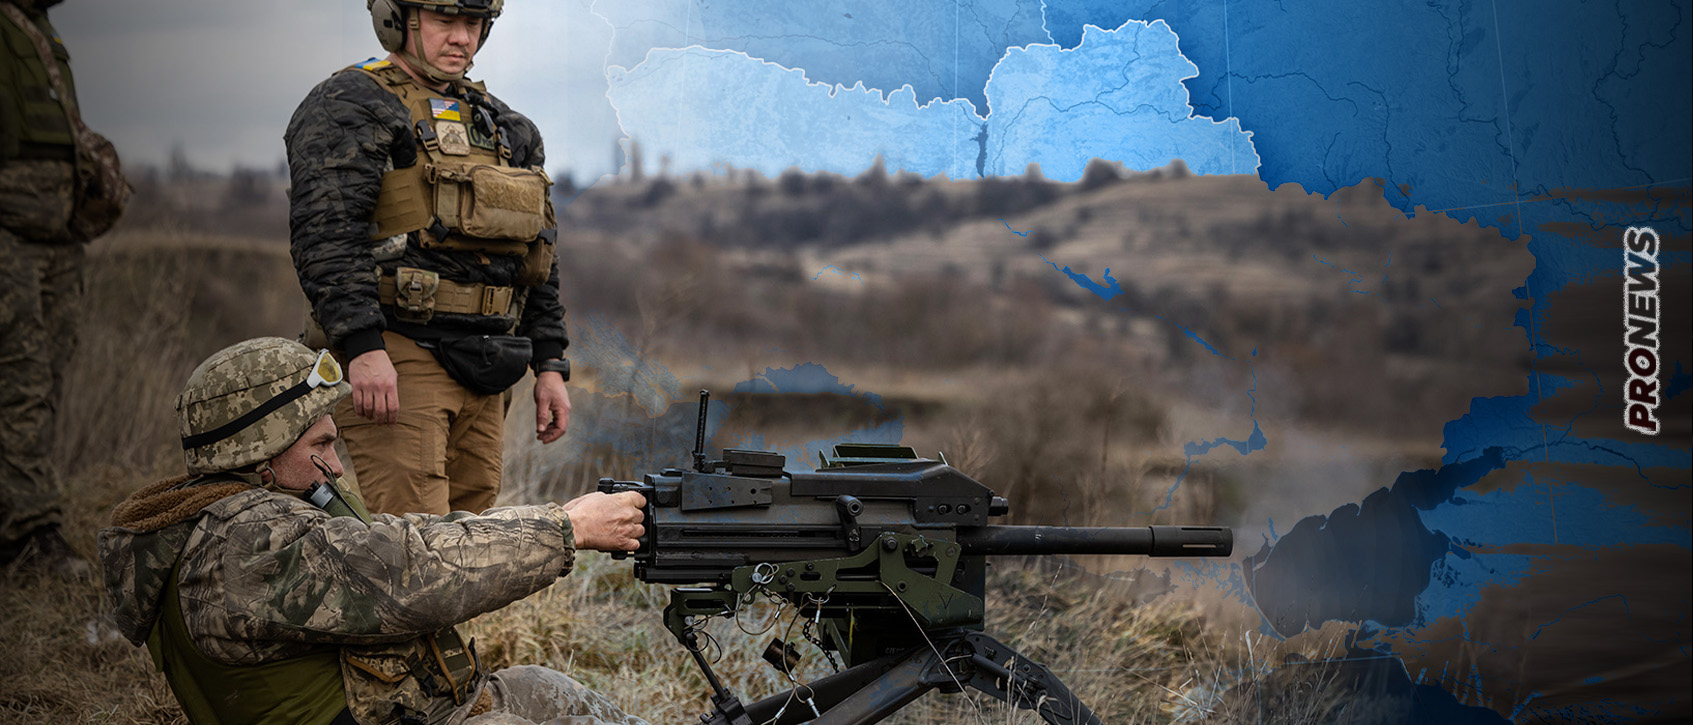 Οι ΗΠΑ αναλαμβάνουν την διοίκηση και την διαχείριση των ουκρανικών δυνάμεων!